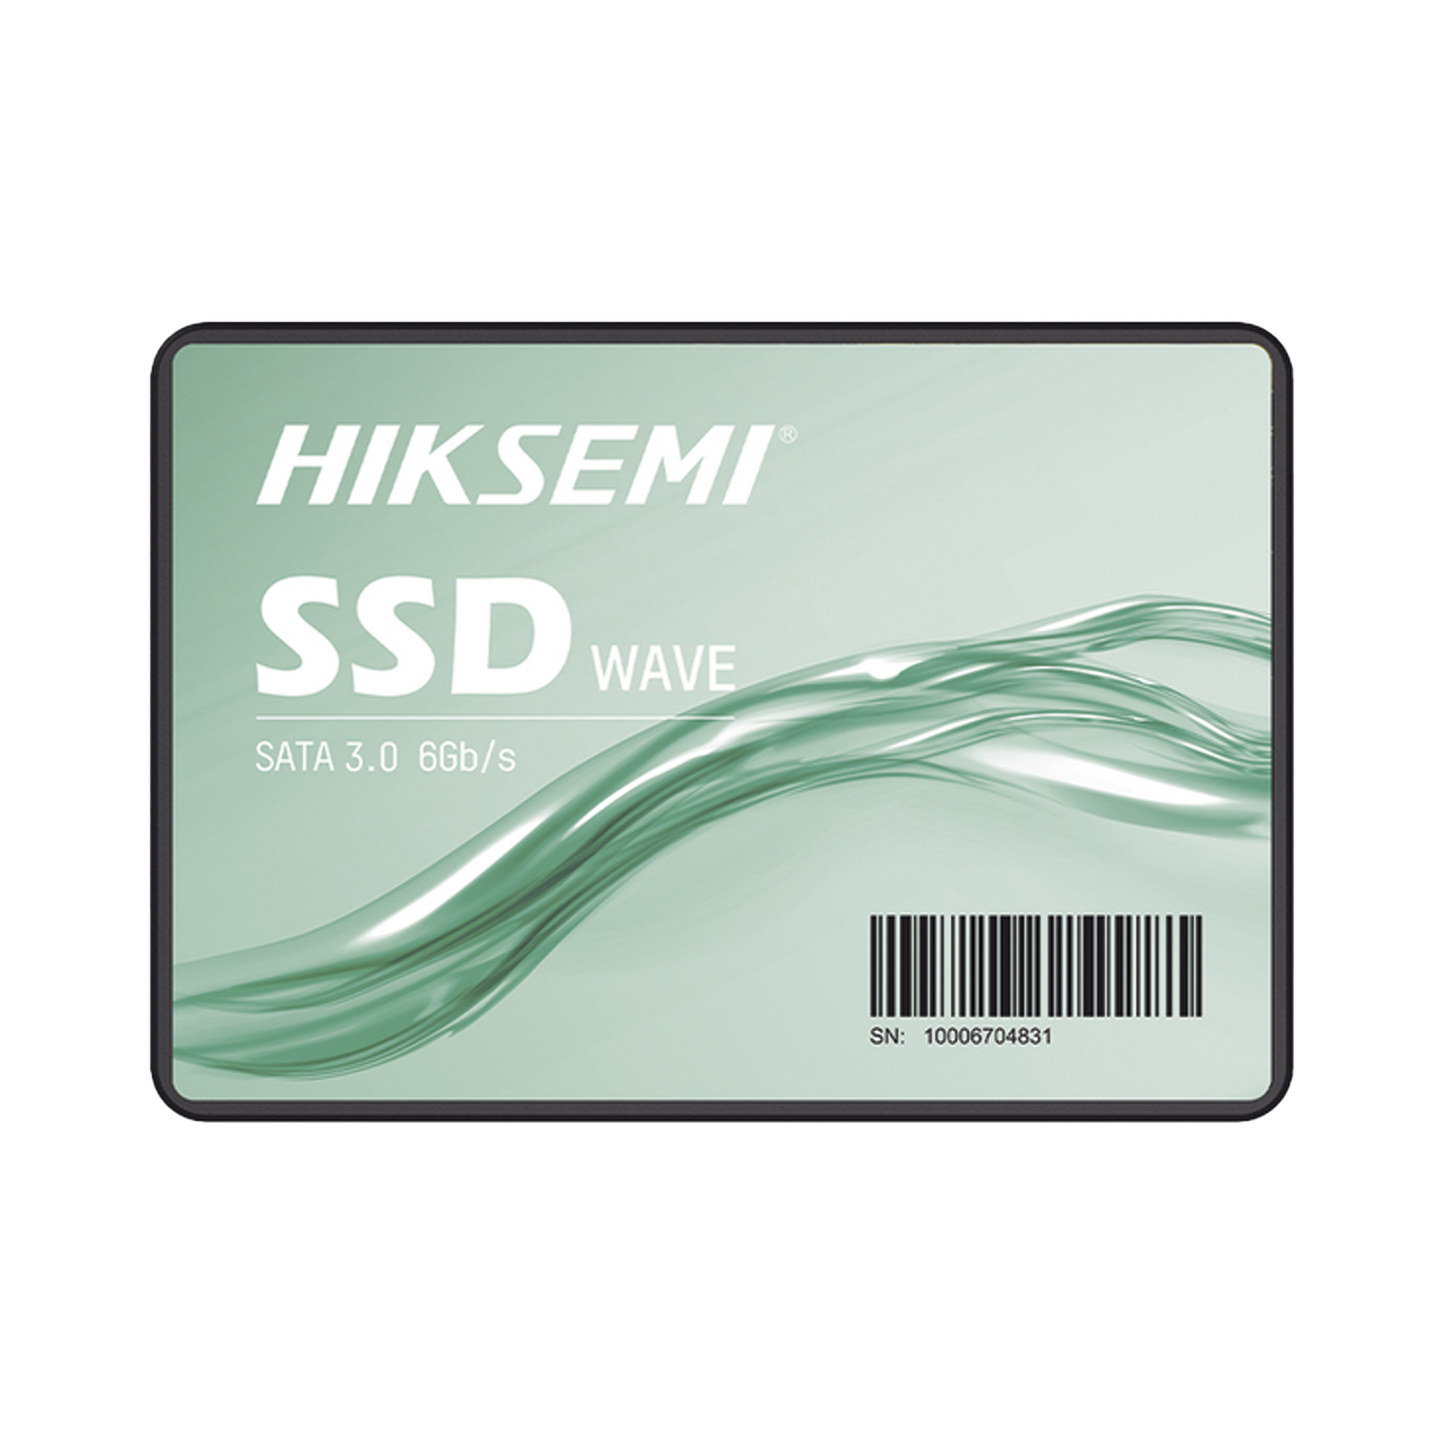 Unidad de Estado Sólido (SSD) 1024 GB / 2.5" / SATA III / ALTO PERFORMANCE / Para Gaming y PC Trabajo Pesado / 550 MB/s Lectura / 470 MB/s Escritura